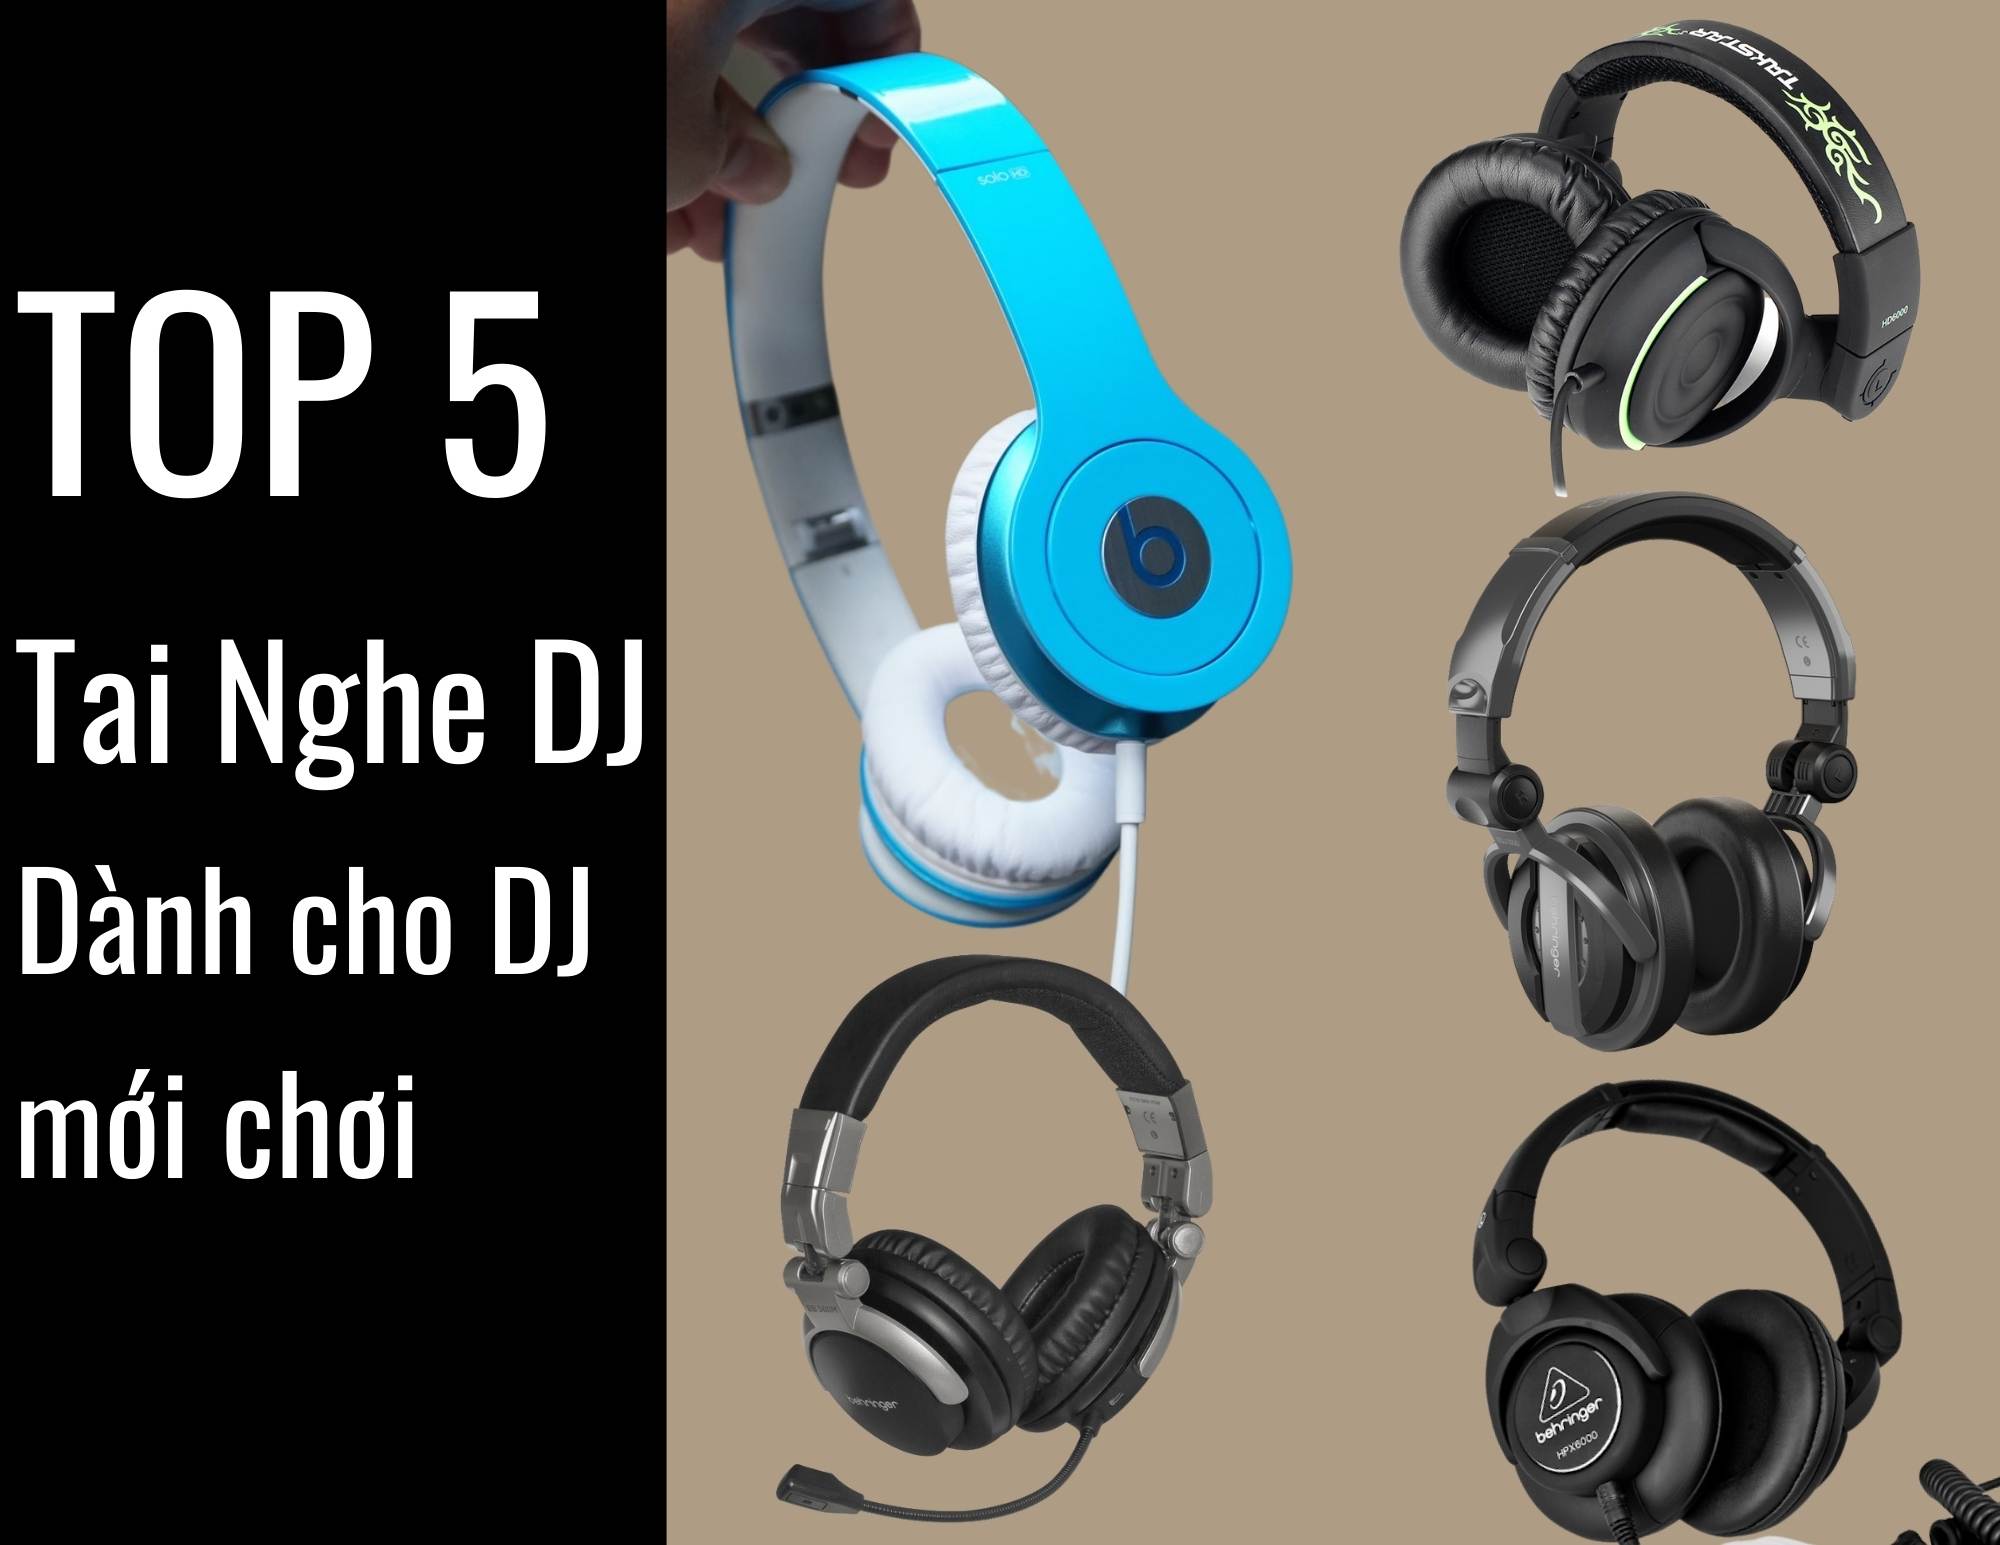 Top 5 tai nghe DJ chất lượng vừa túi tiền cho DJ mới chơi.